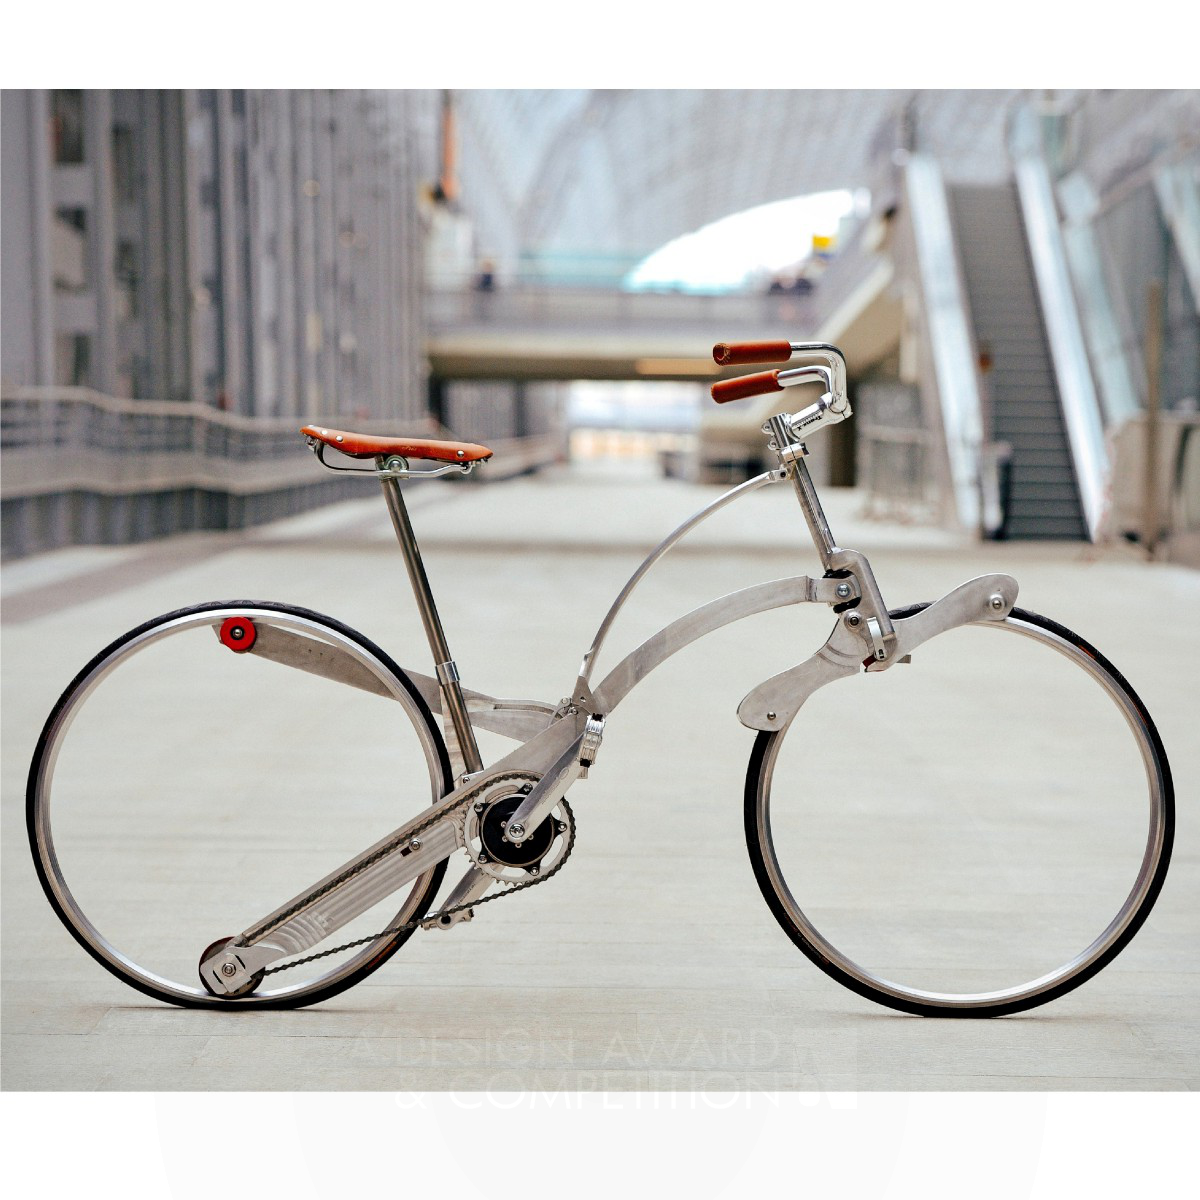 Sada Bike: Redefining Urban Mobility